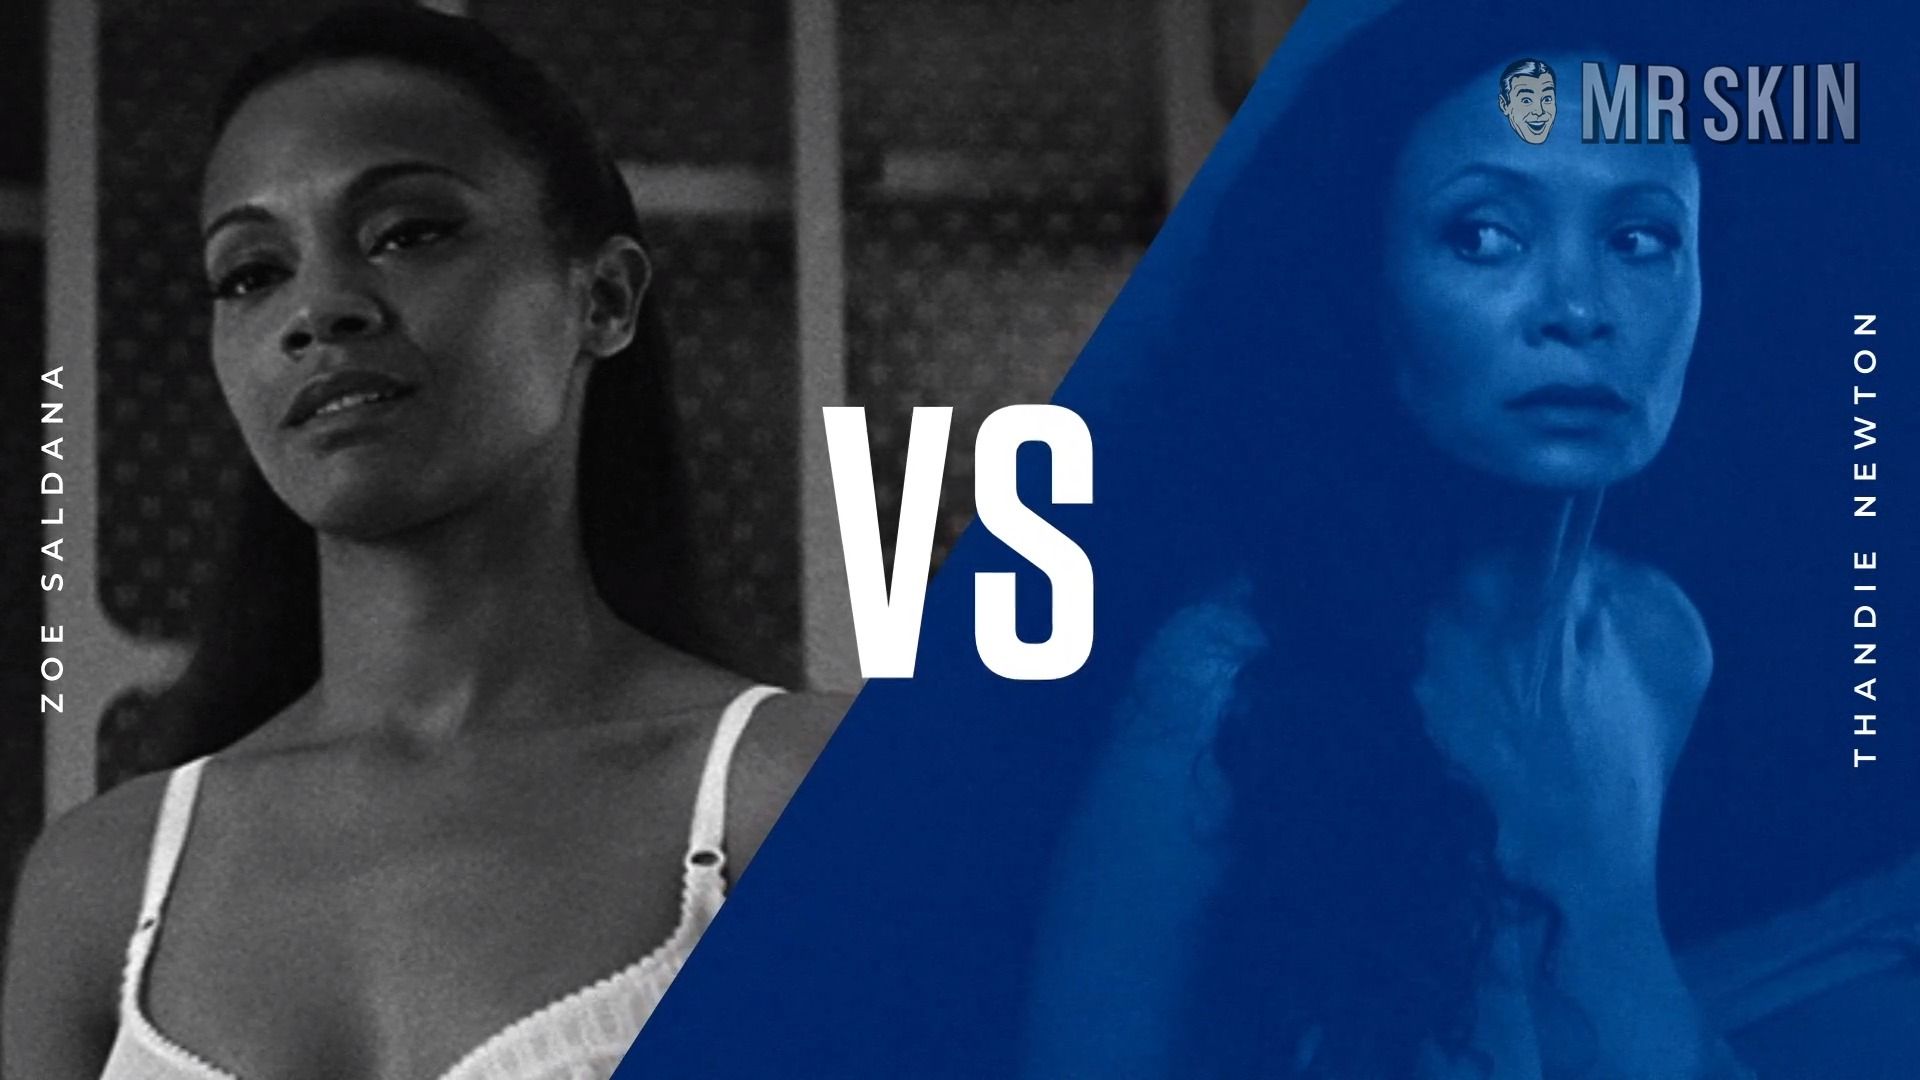 Battle of the Babes: Zoe Saldana vs. Thandie Newton at Mr. Skin.